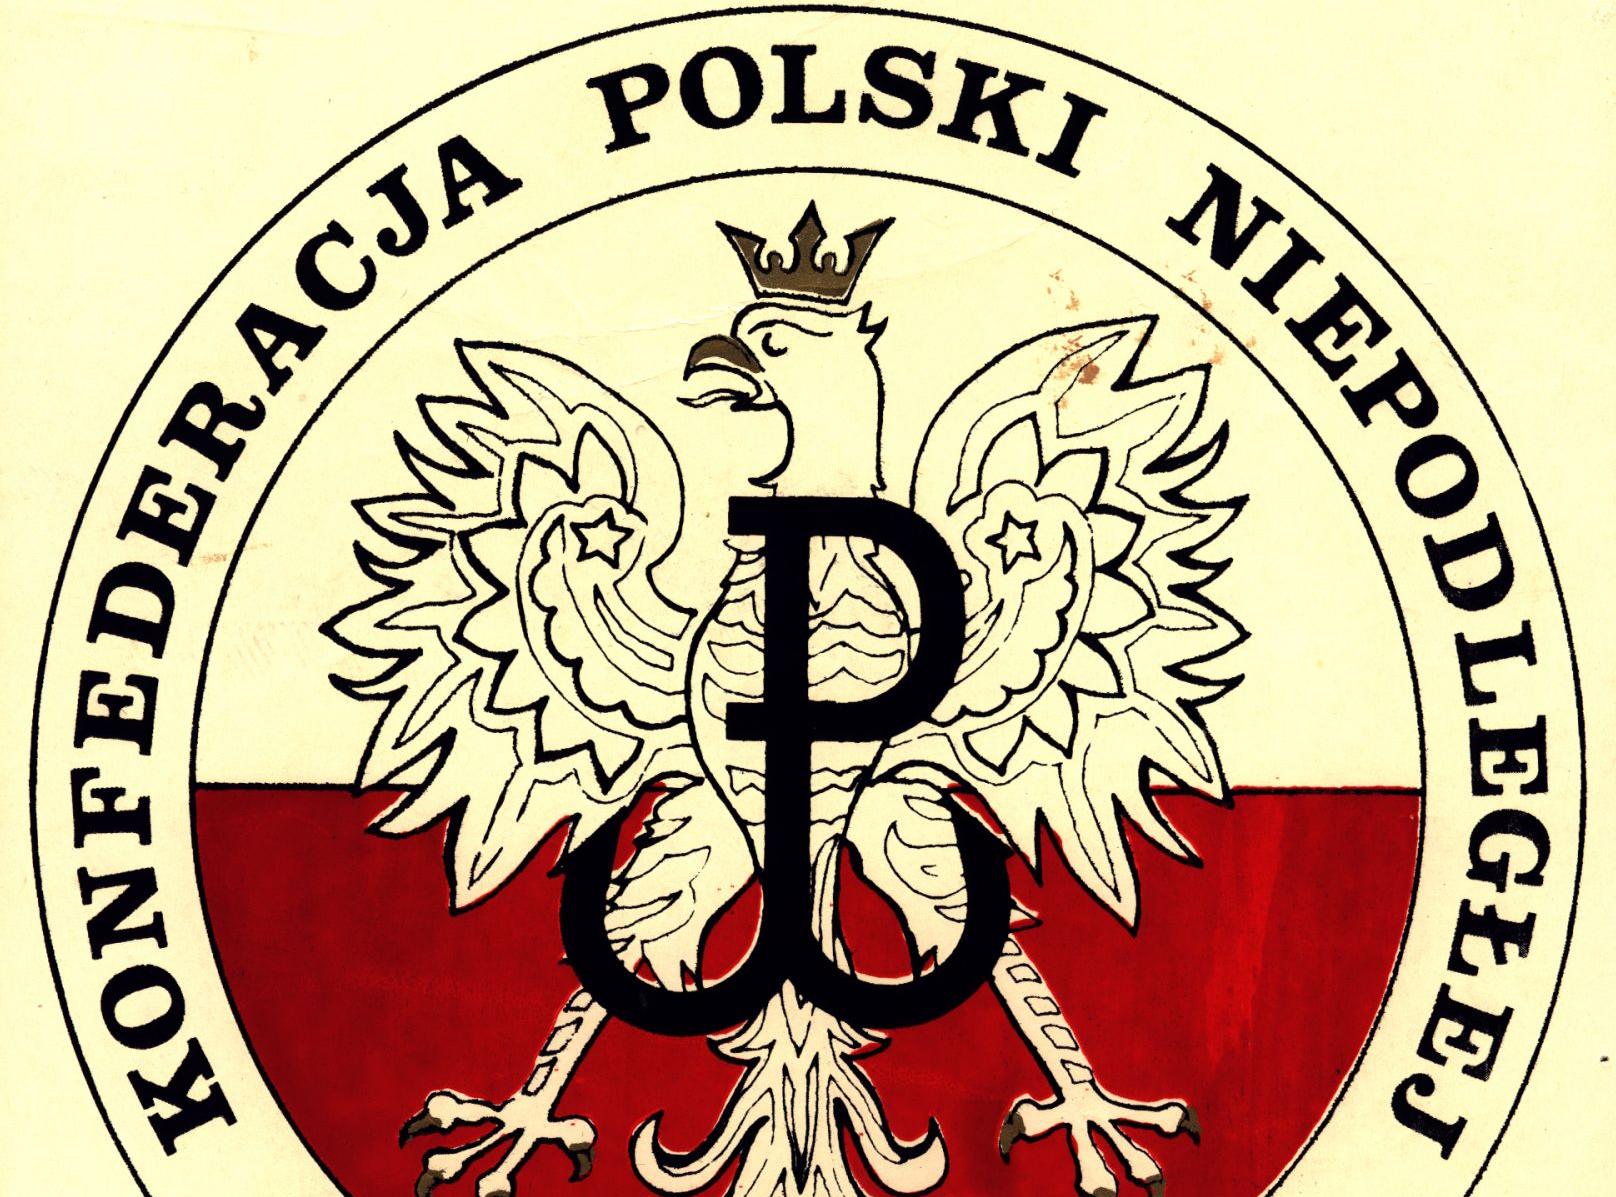 Konfederacja Polski Niepodległej